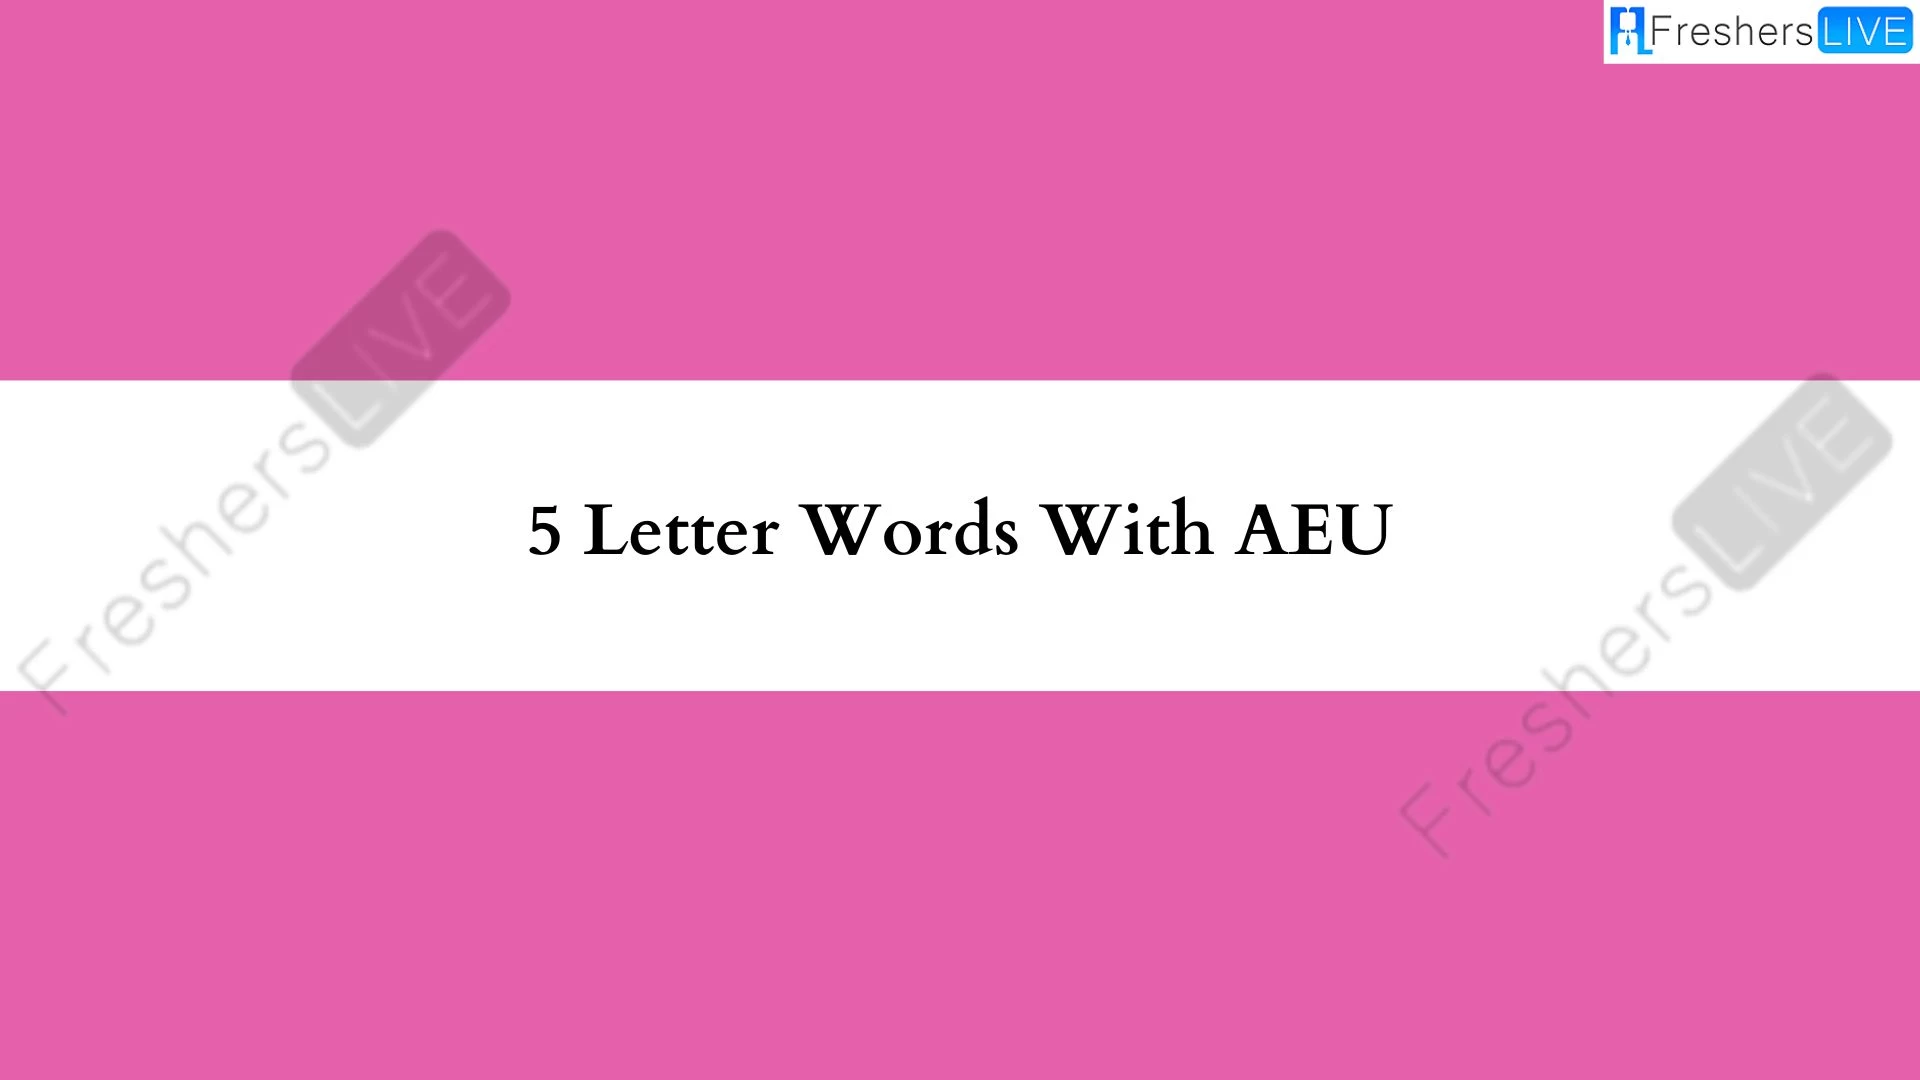 Palabras de 5 letras con una lista de todas las palabras AEU